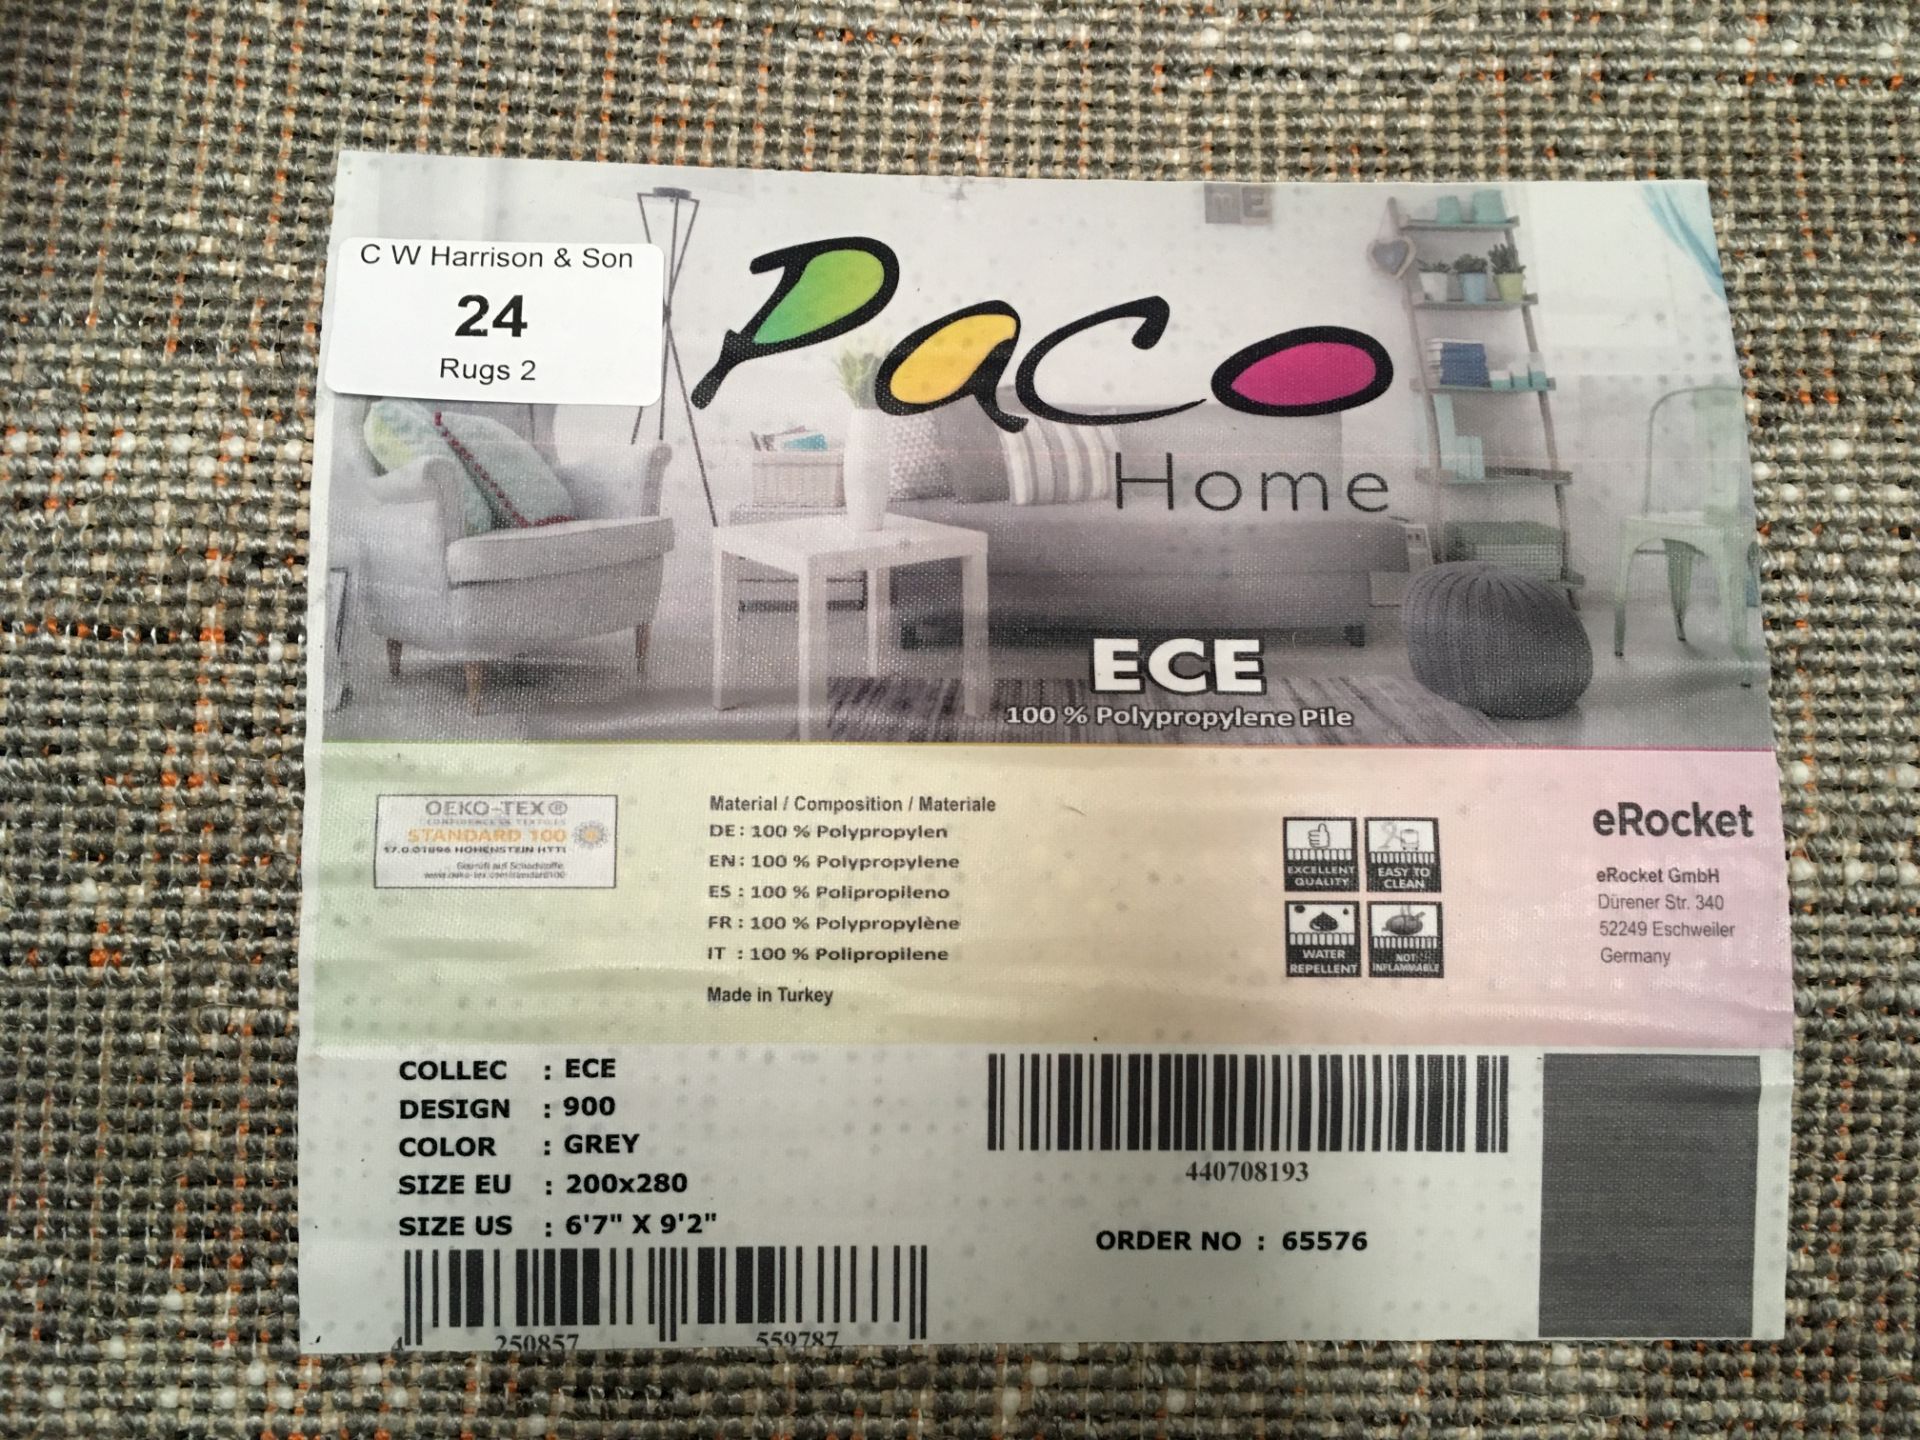 A Paco Home ECE 900 grey rug - 200cm x 280cm - Image 2 of 2